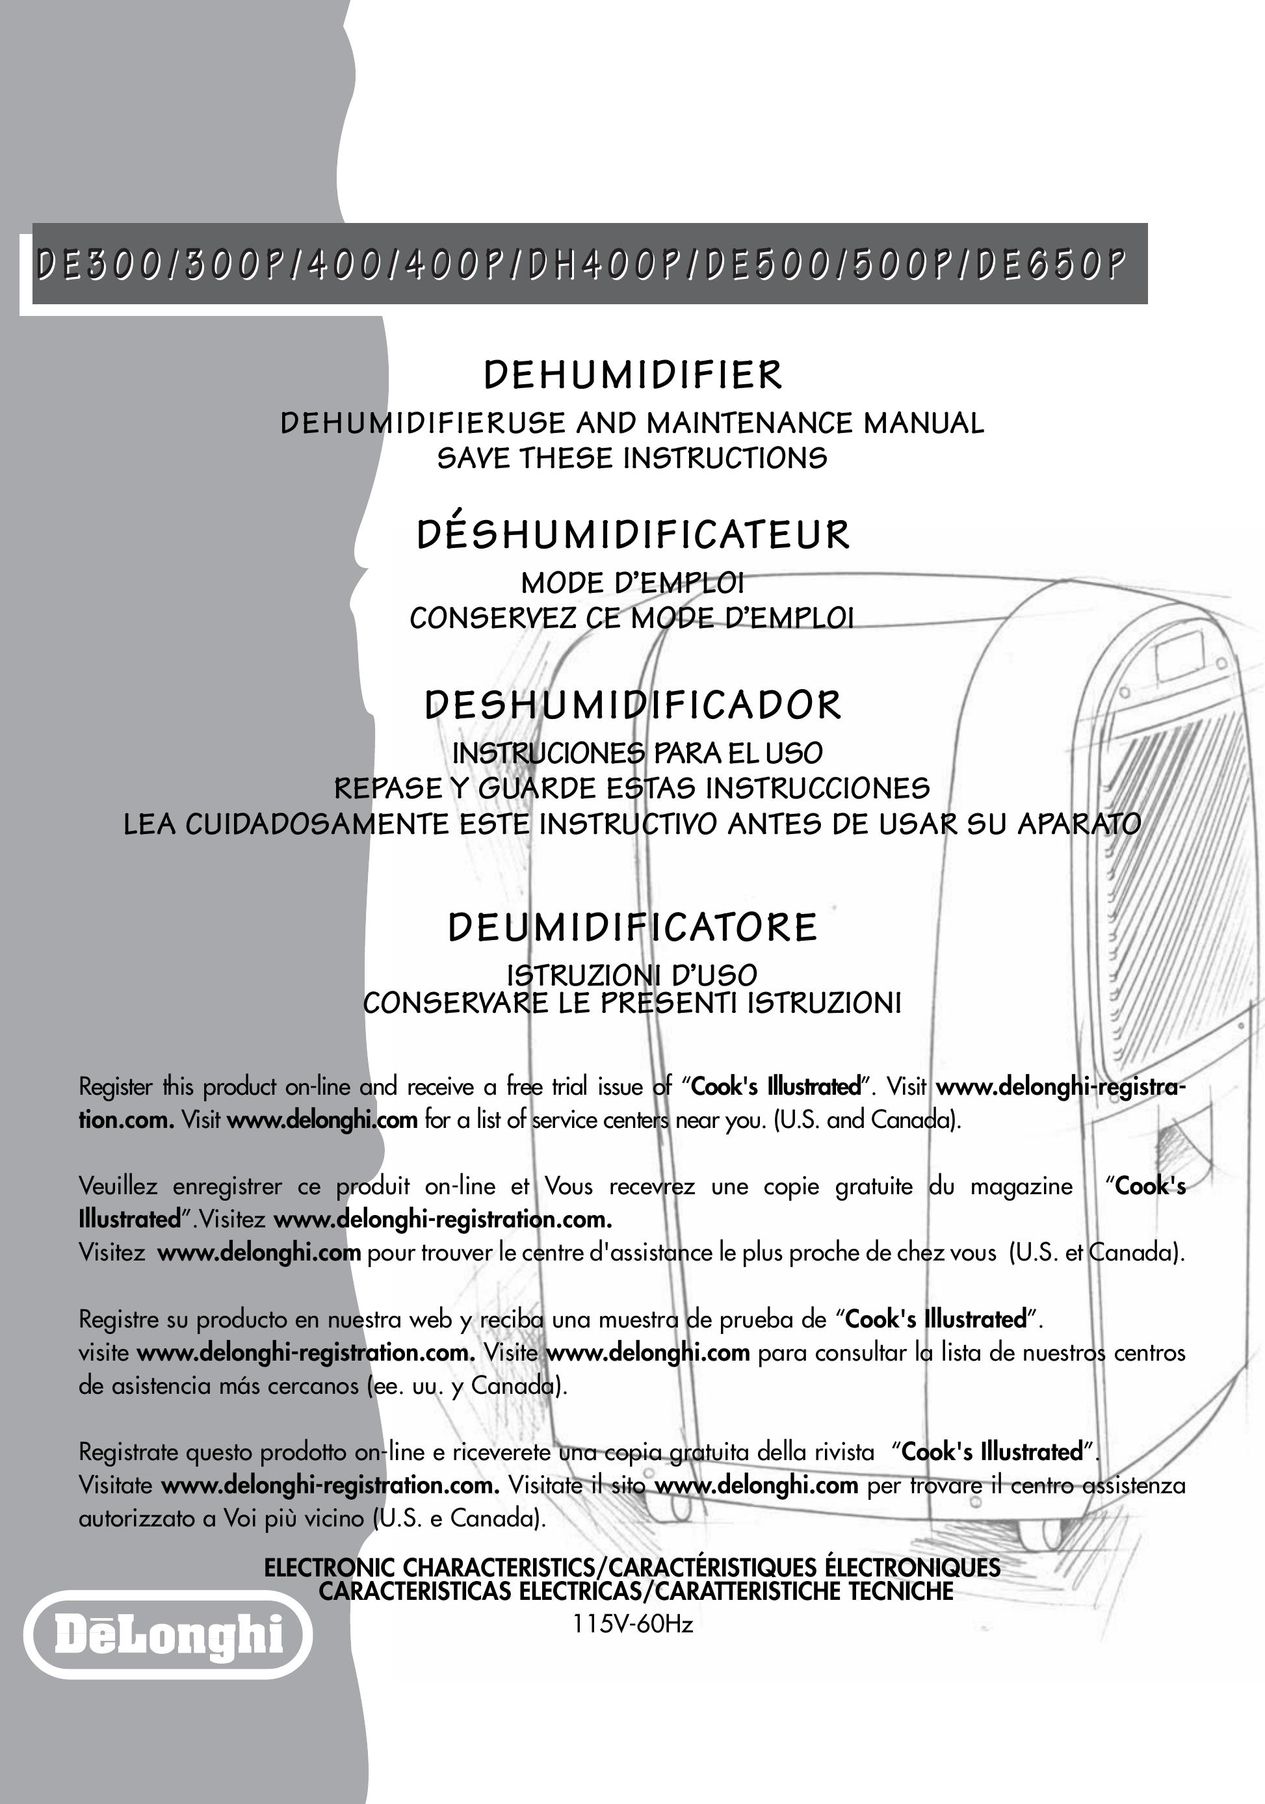 DeLonghi DE 400P Dehumidifier User Manual